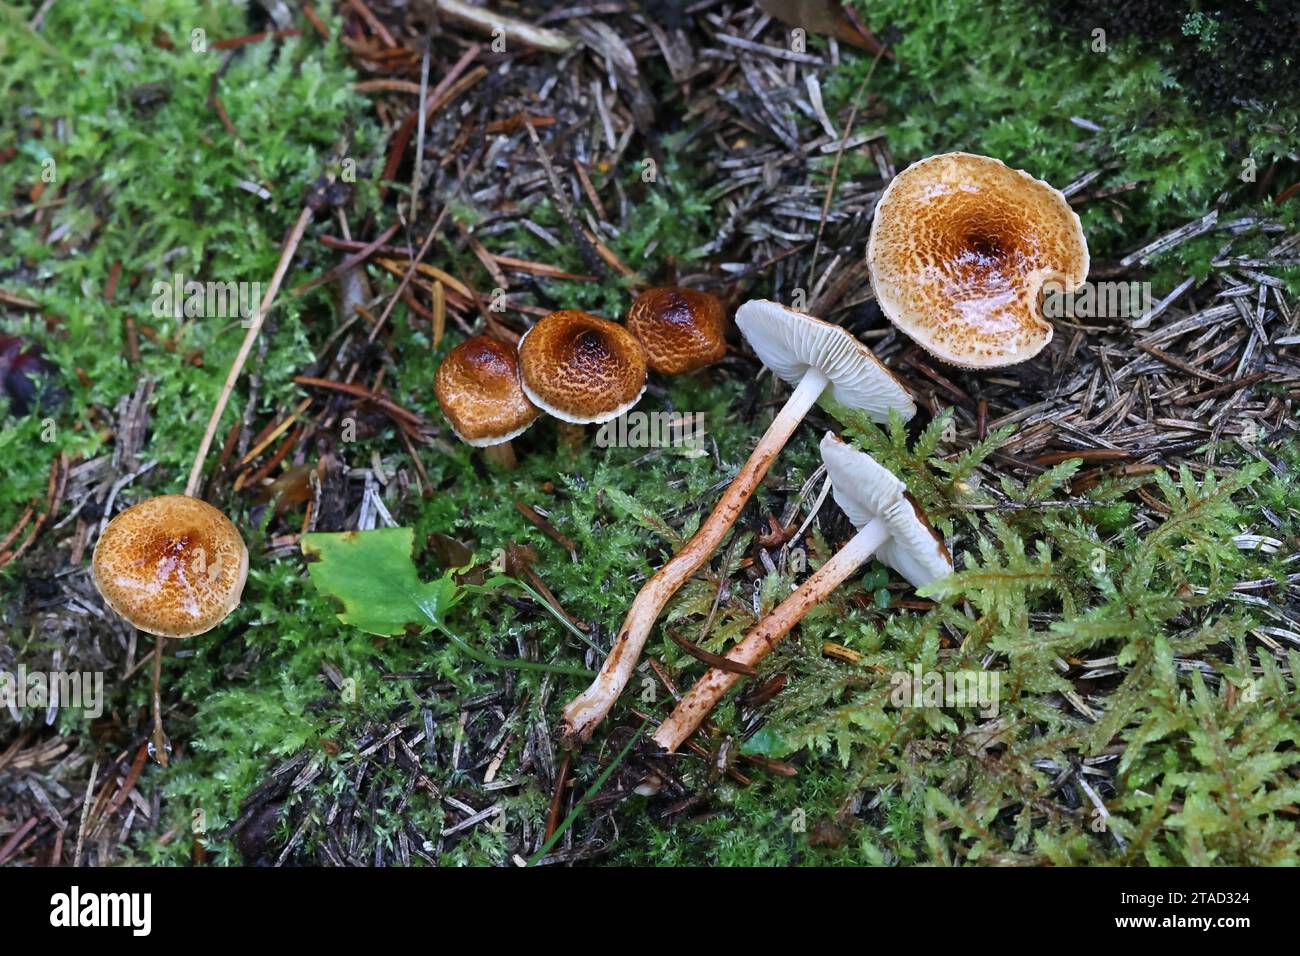 Lepiota castanea, allgemein bekannt als Kastaniendapperling, ein giftiger Pilz aus Finnland Stockfoto